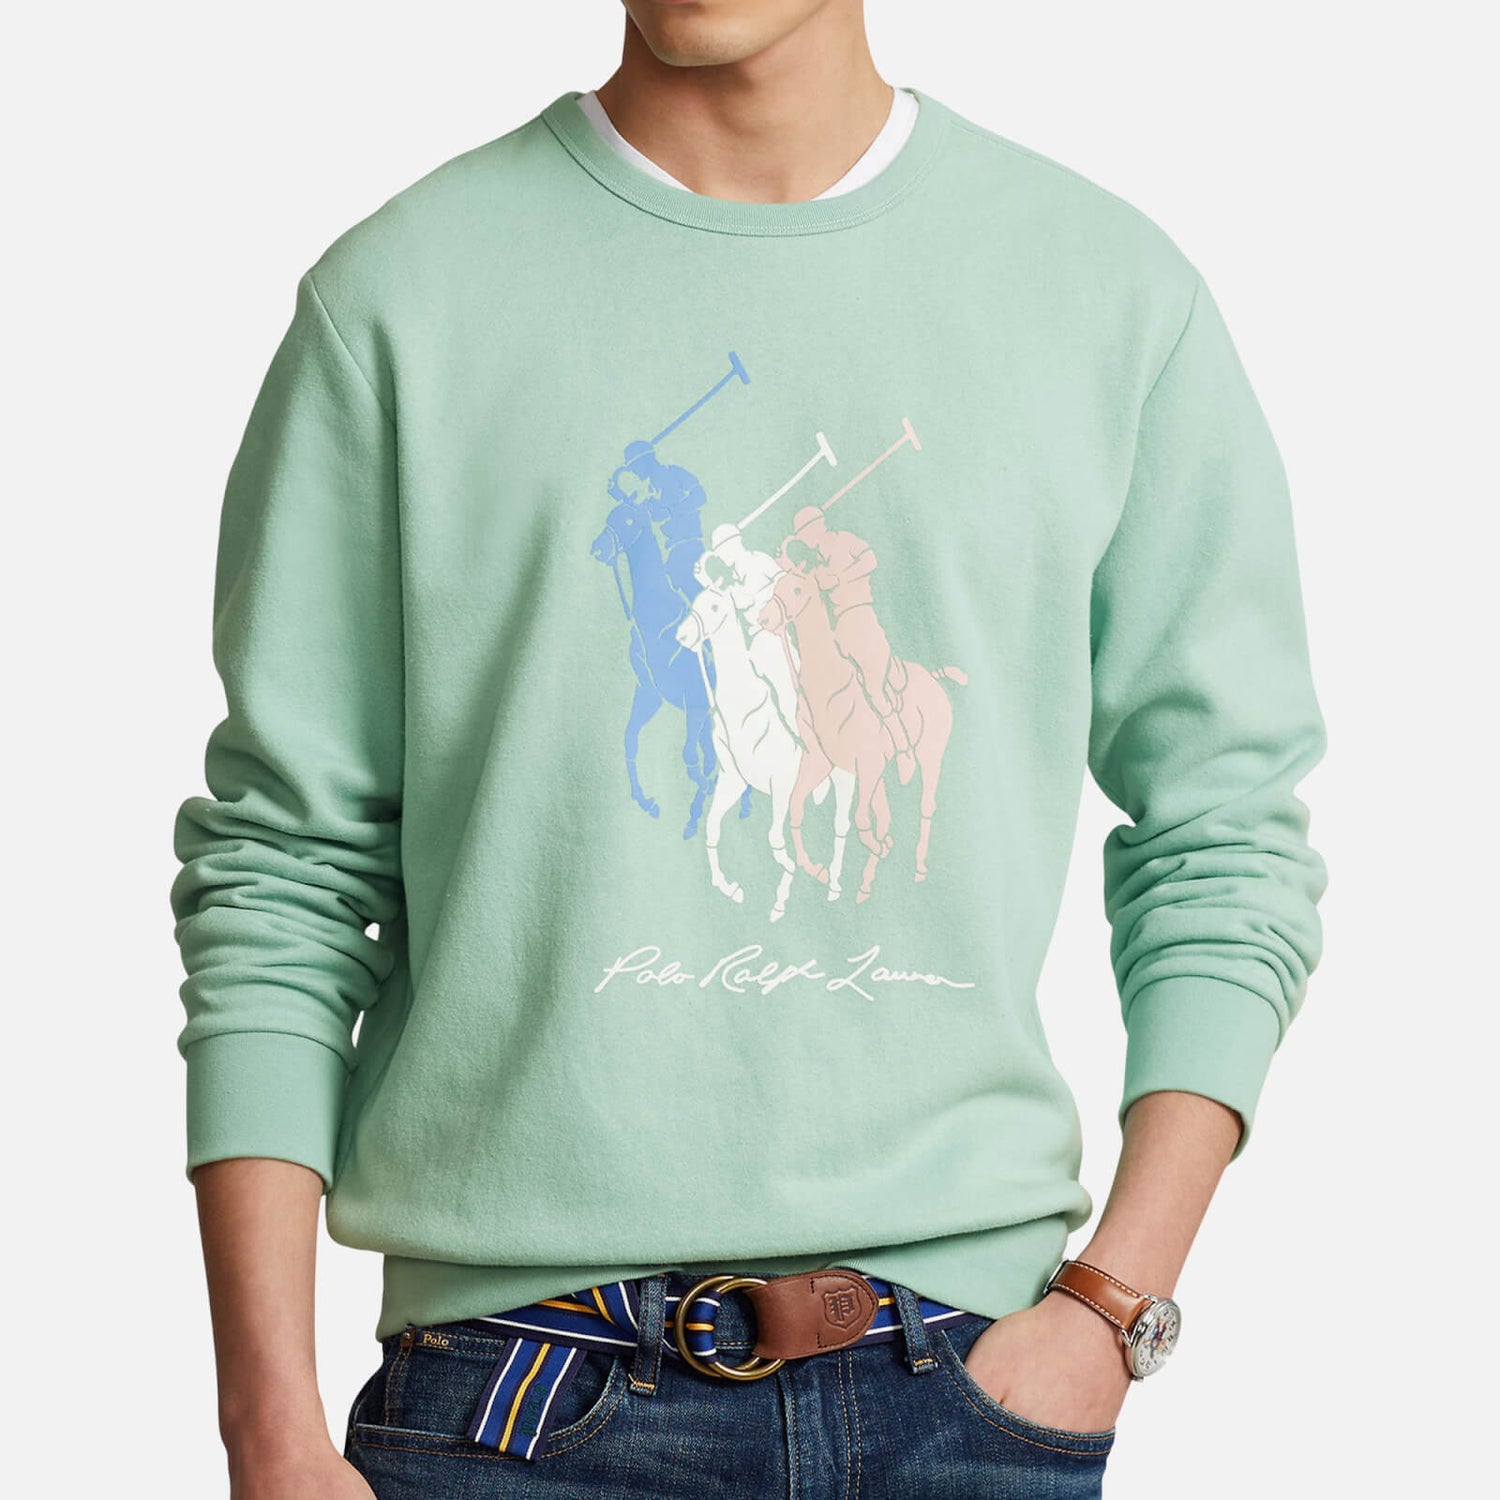 Polo Ralph Lauren Big Pony Cotton-Blend Fleece Sweatshirt - S